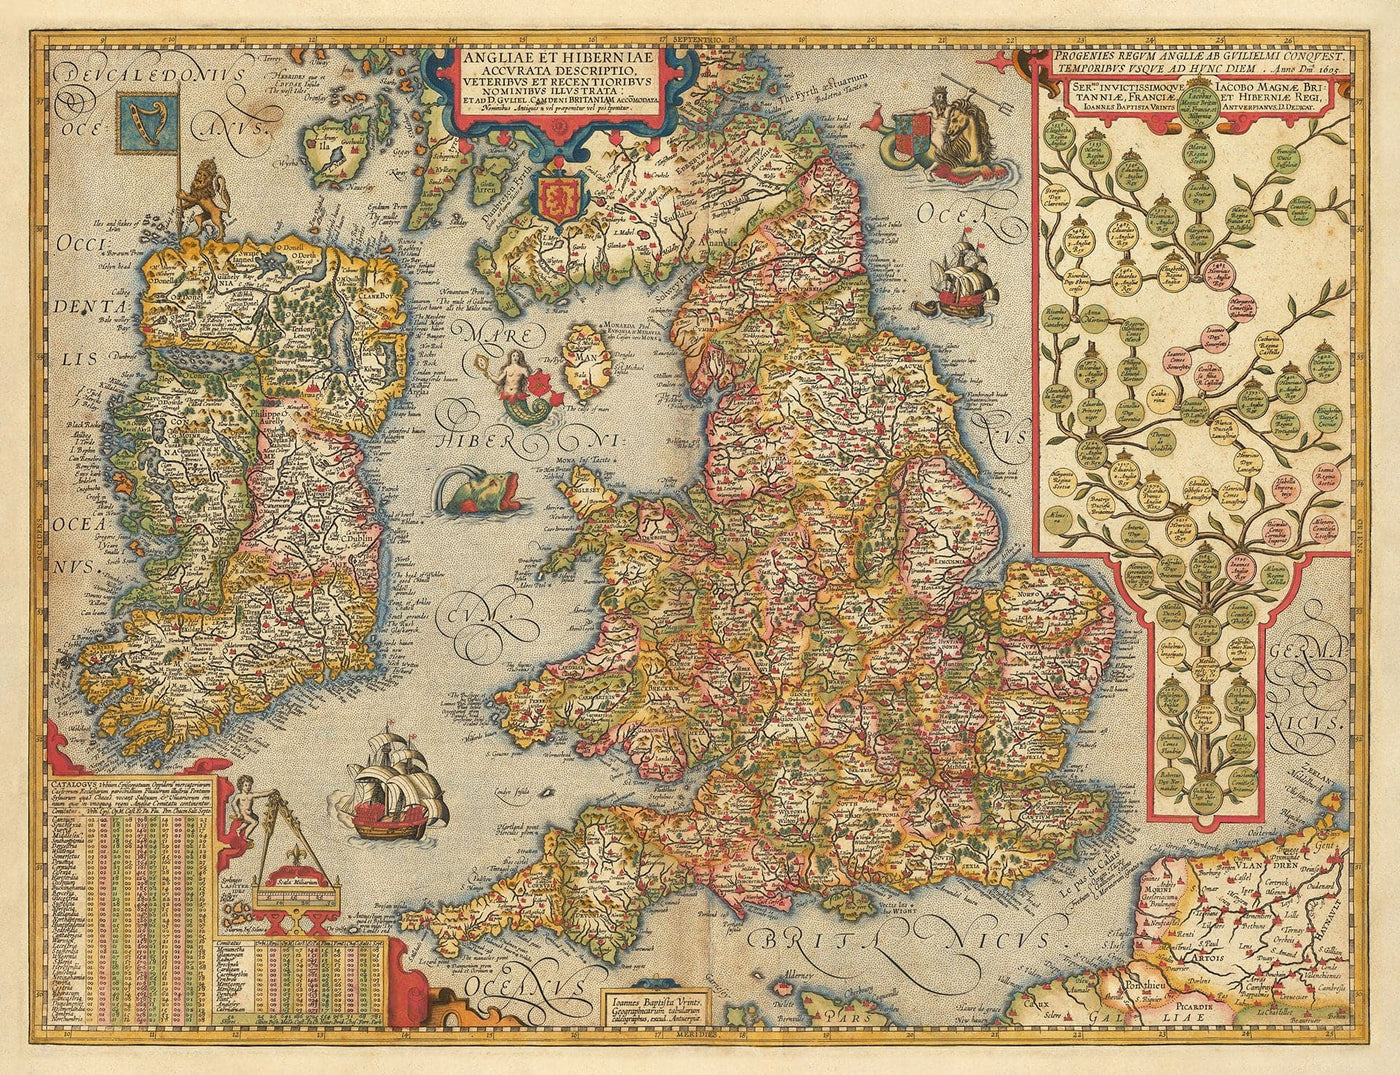 Alte Farbkarte von England und Irland im Jahr 1605 von Abraham Ortelius